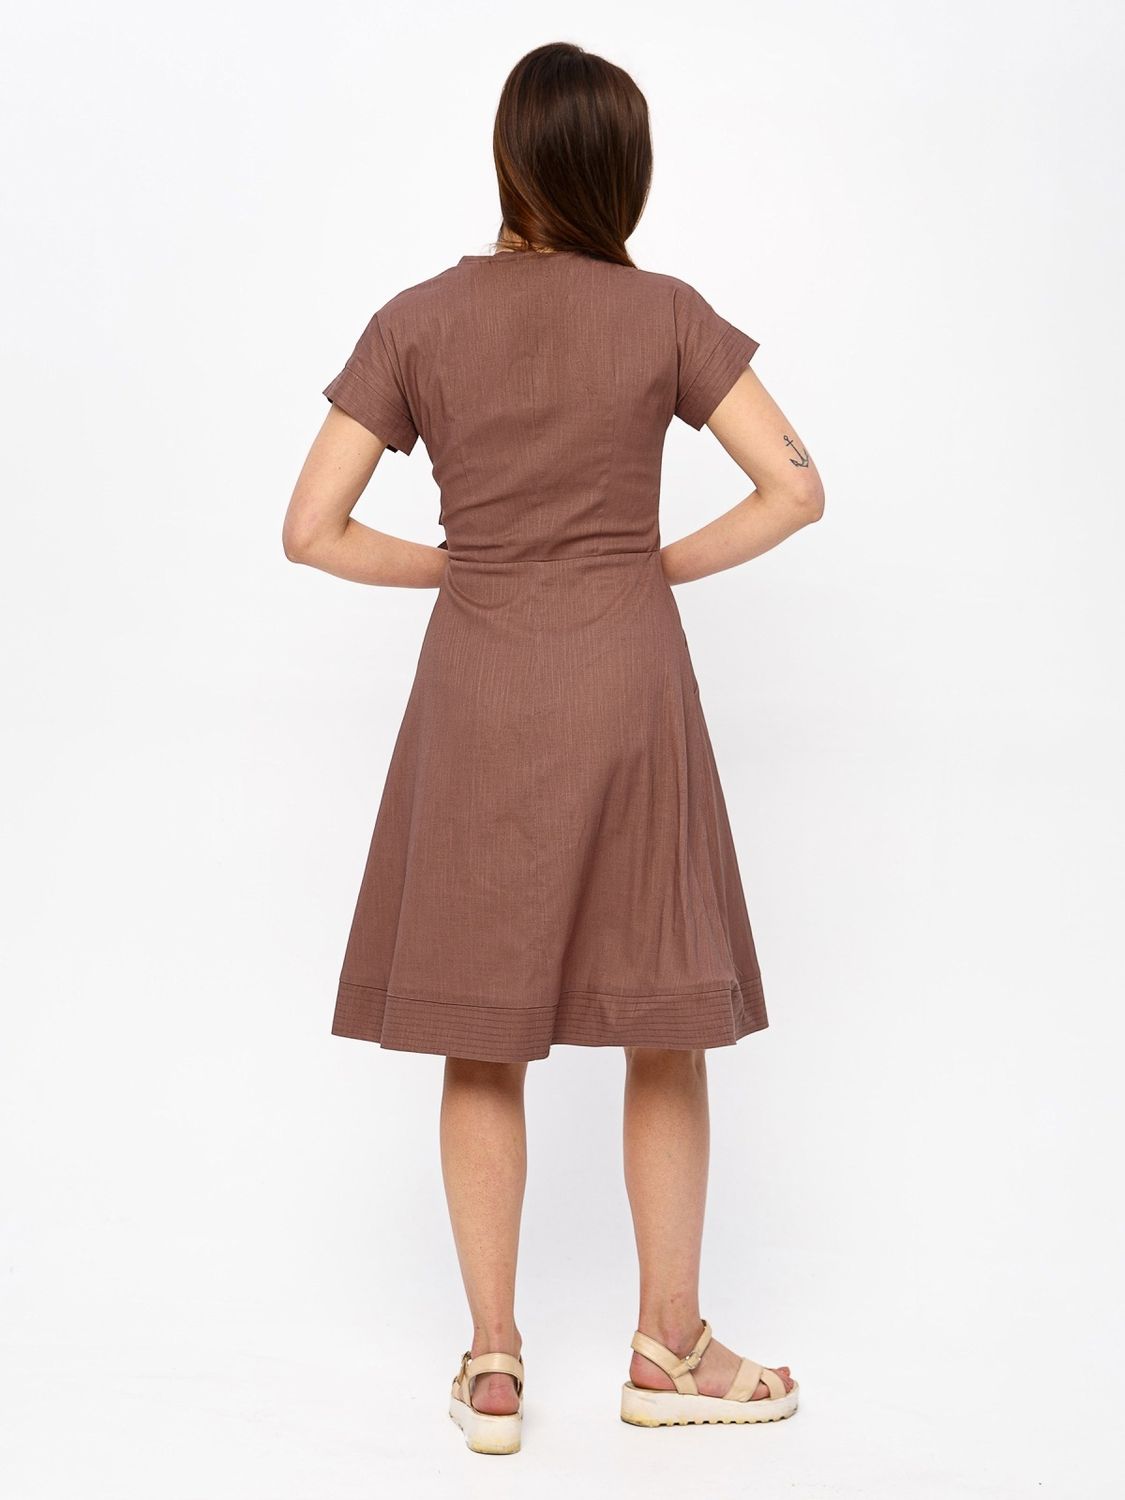 Летнее платье на запах из хлопка коричневого цвета - фото